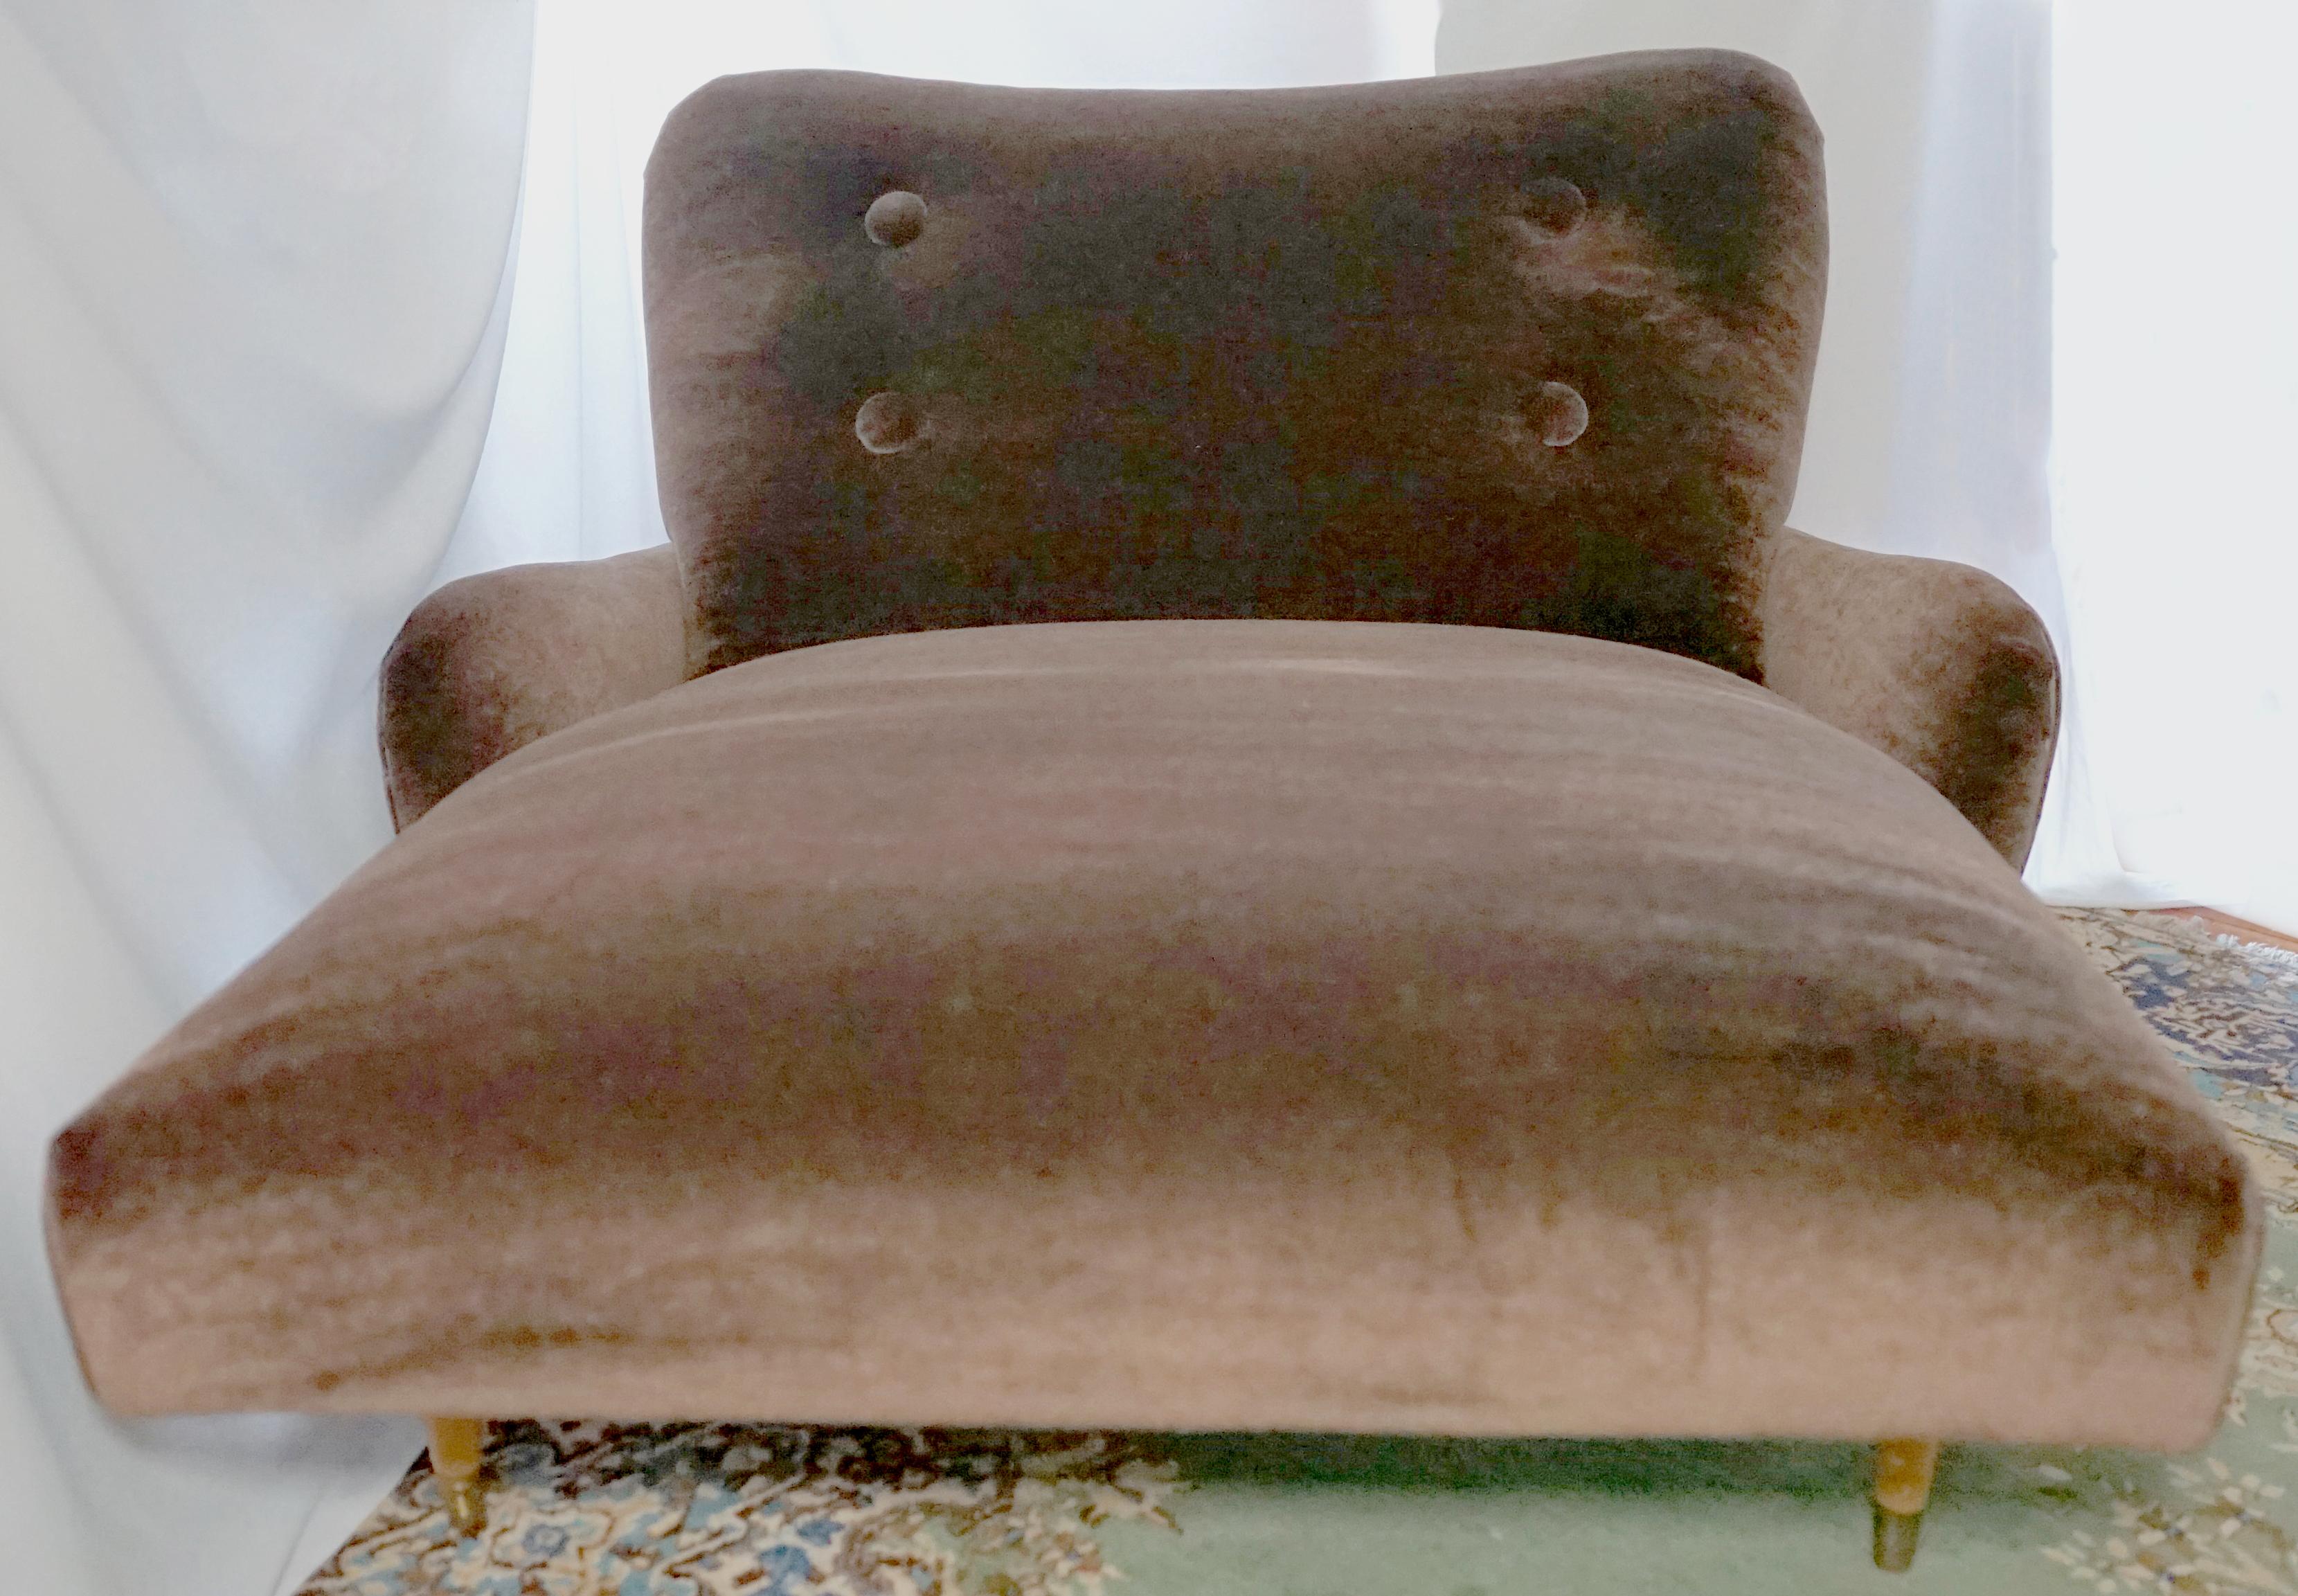 Form, Funktion und Luxus treffen sich hier mit der Schönheit von Mohair in einem schokoladenfarbenen Samtflor, der eine superelegante Chaiselongue aus der Mitte des Jahrhunderts bedeckt.
Feiner als Kaschmir, strapazierfähiger als Wolle, nähert sich